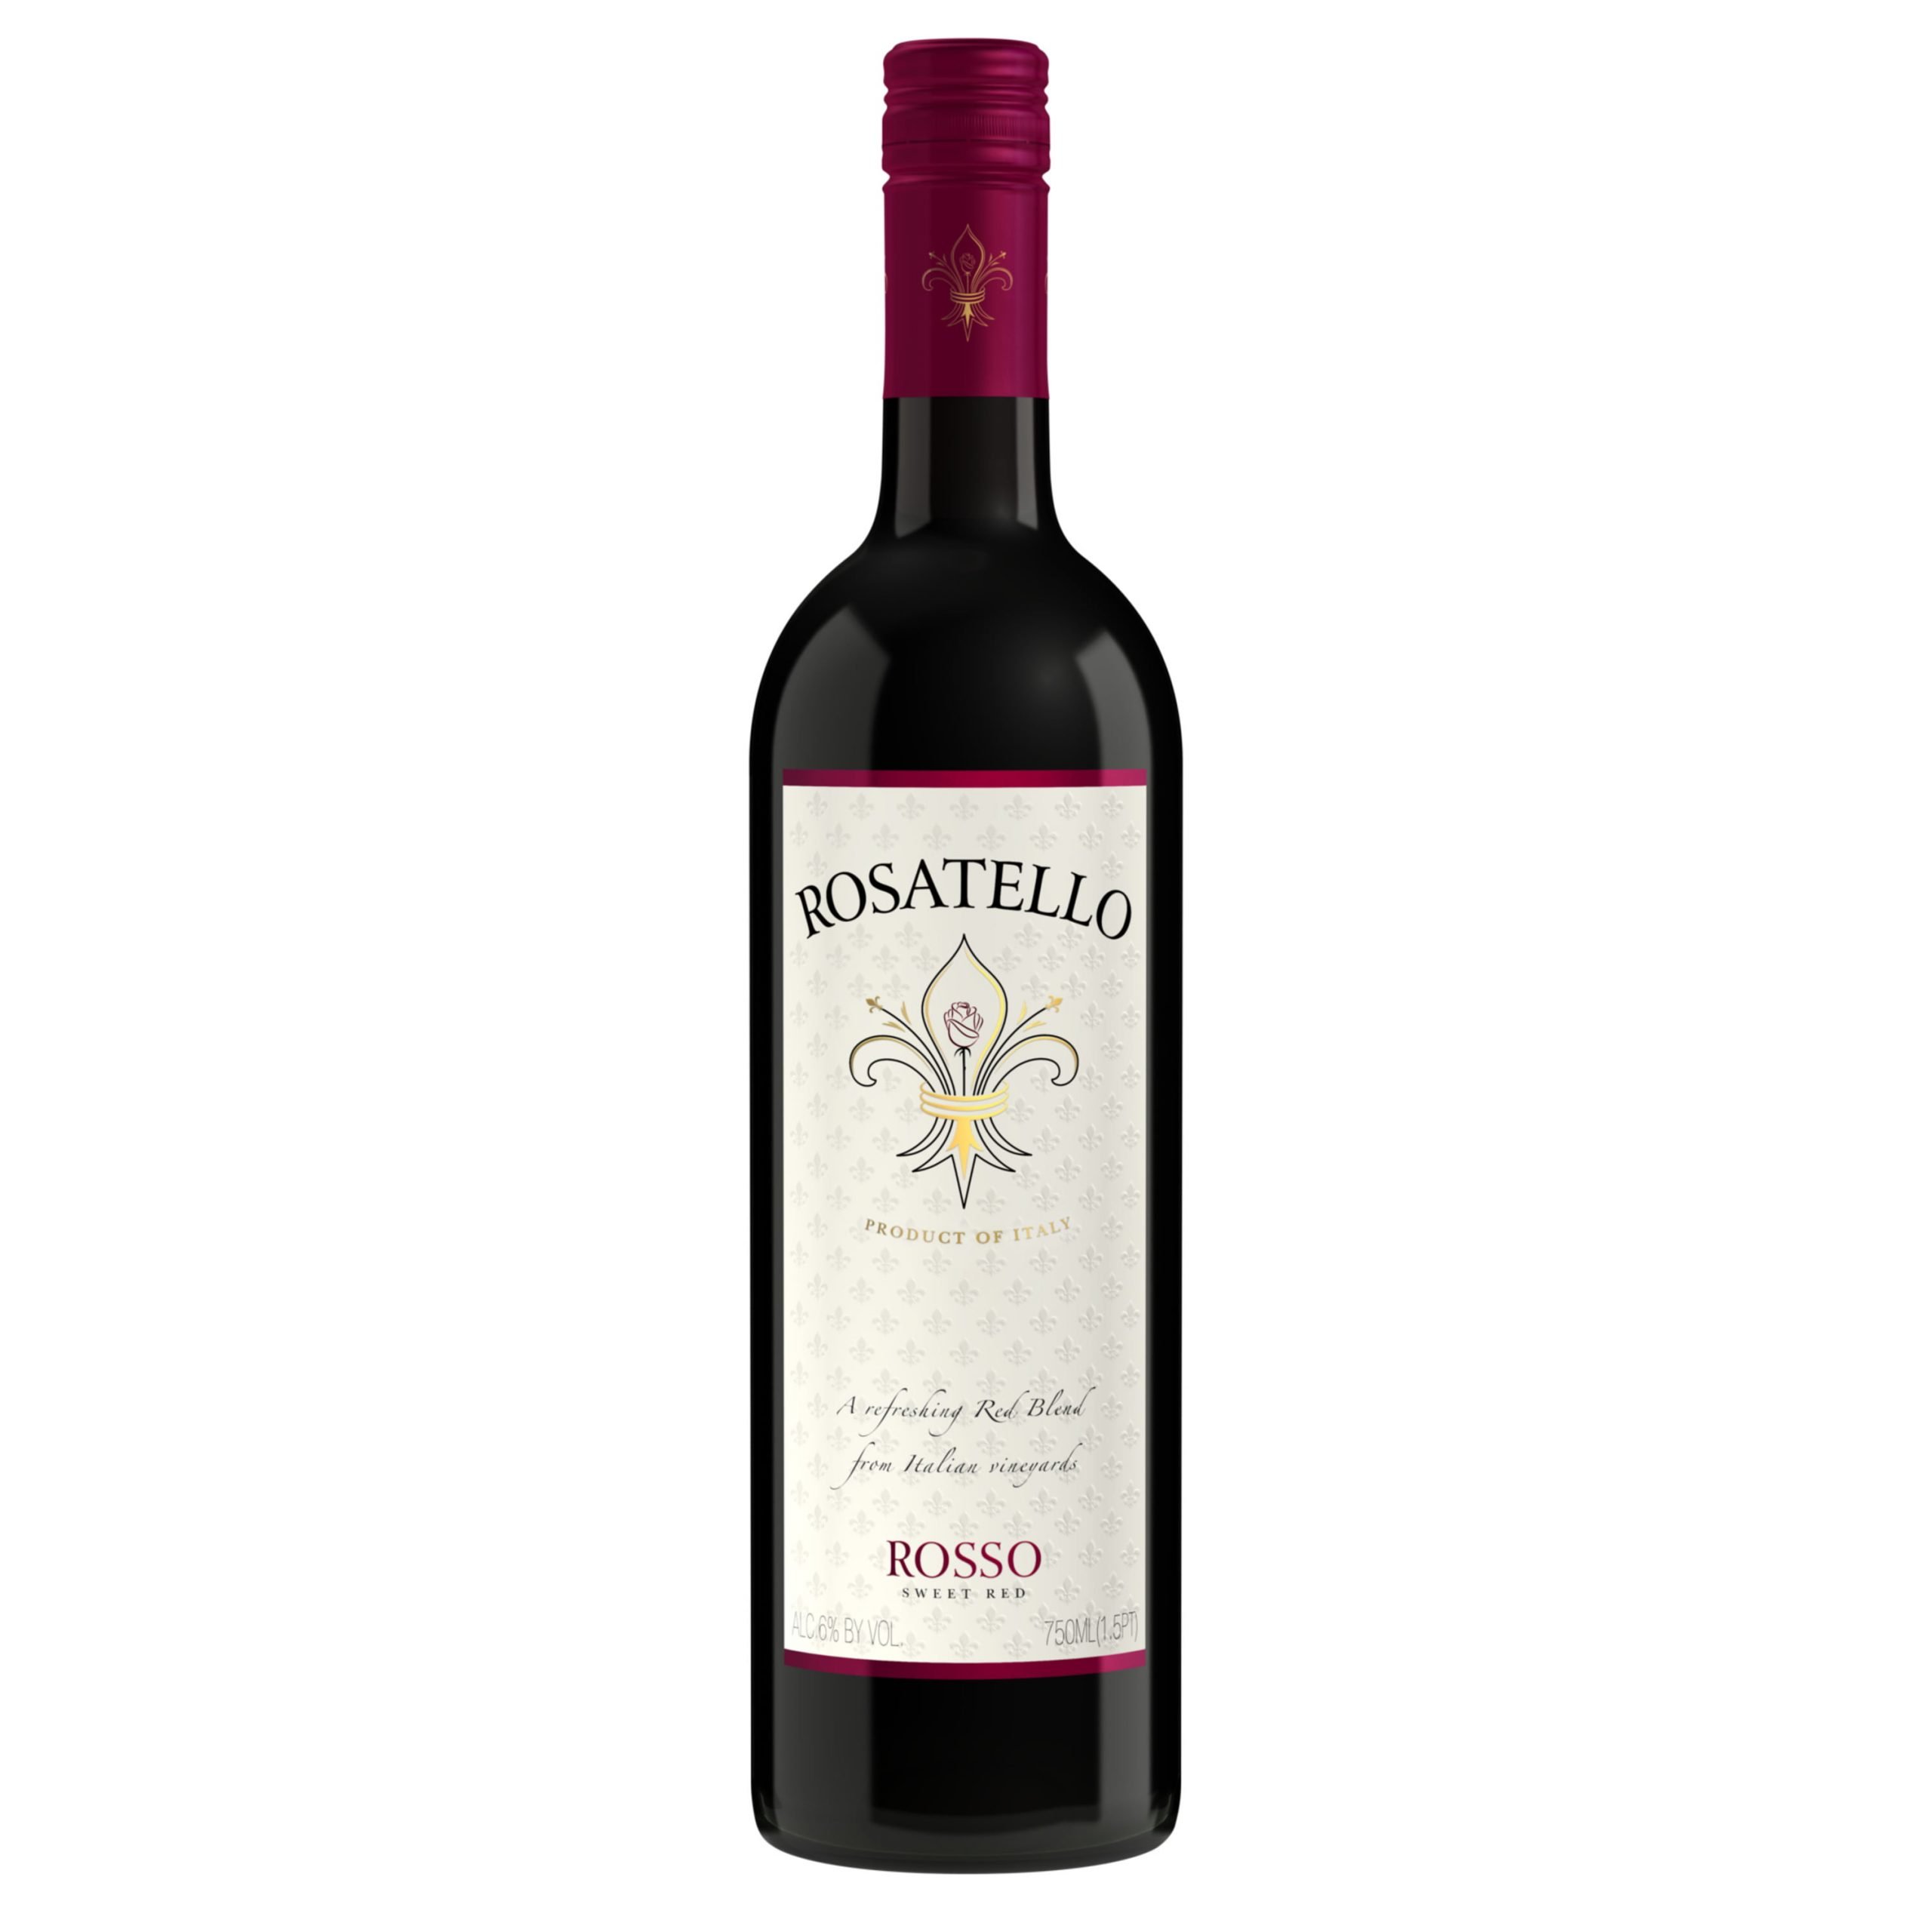 Rosatello Sweet Rosso Red Blend, Italian Red Wine, 750 mL Bottle ...